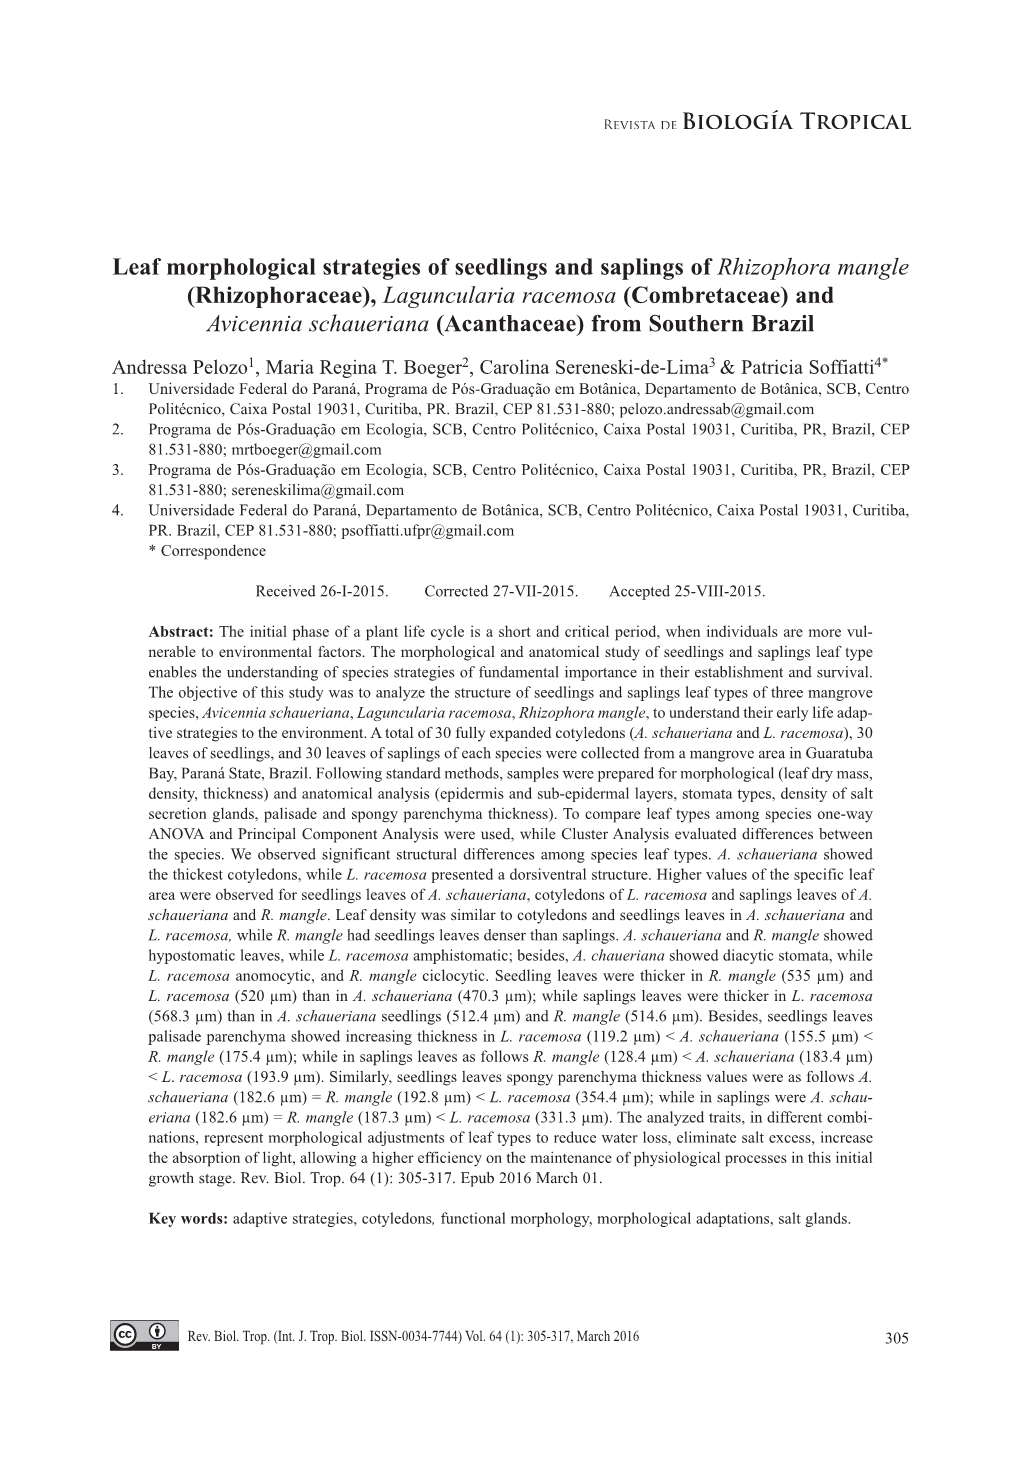 Leaf Morphological Strategies of Seedlings and Saplings Of